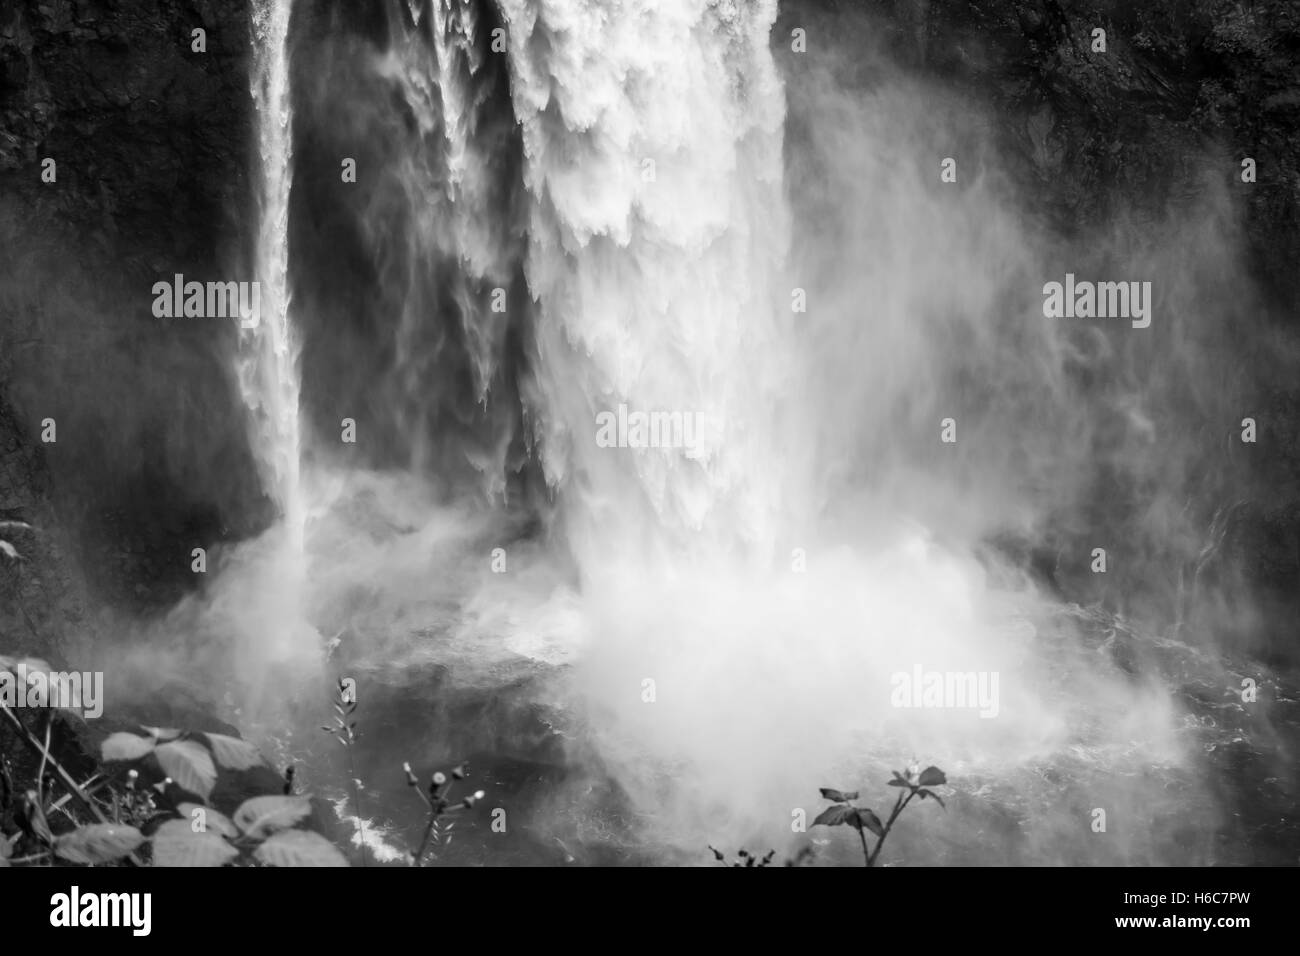 Acqua esplode in una cascata in Snoqualmie, Washington. Immagine in bianco e nero. Foto Stock